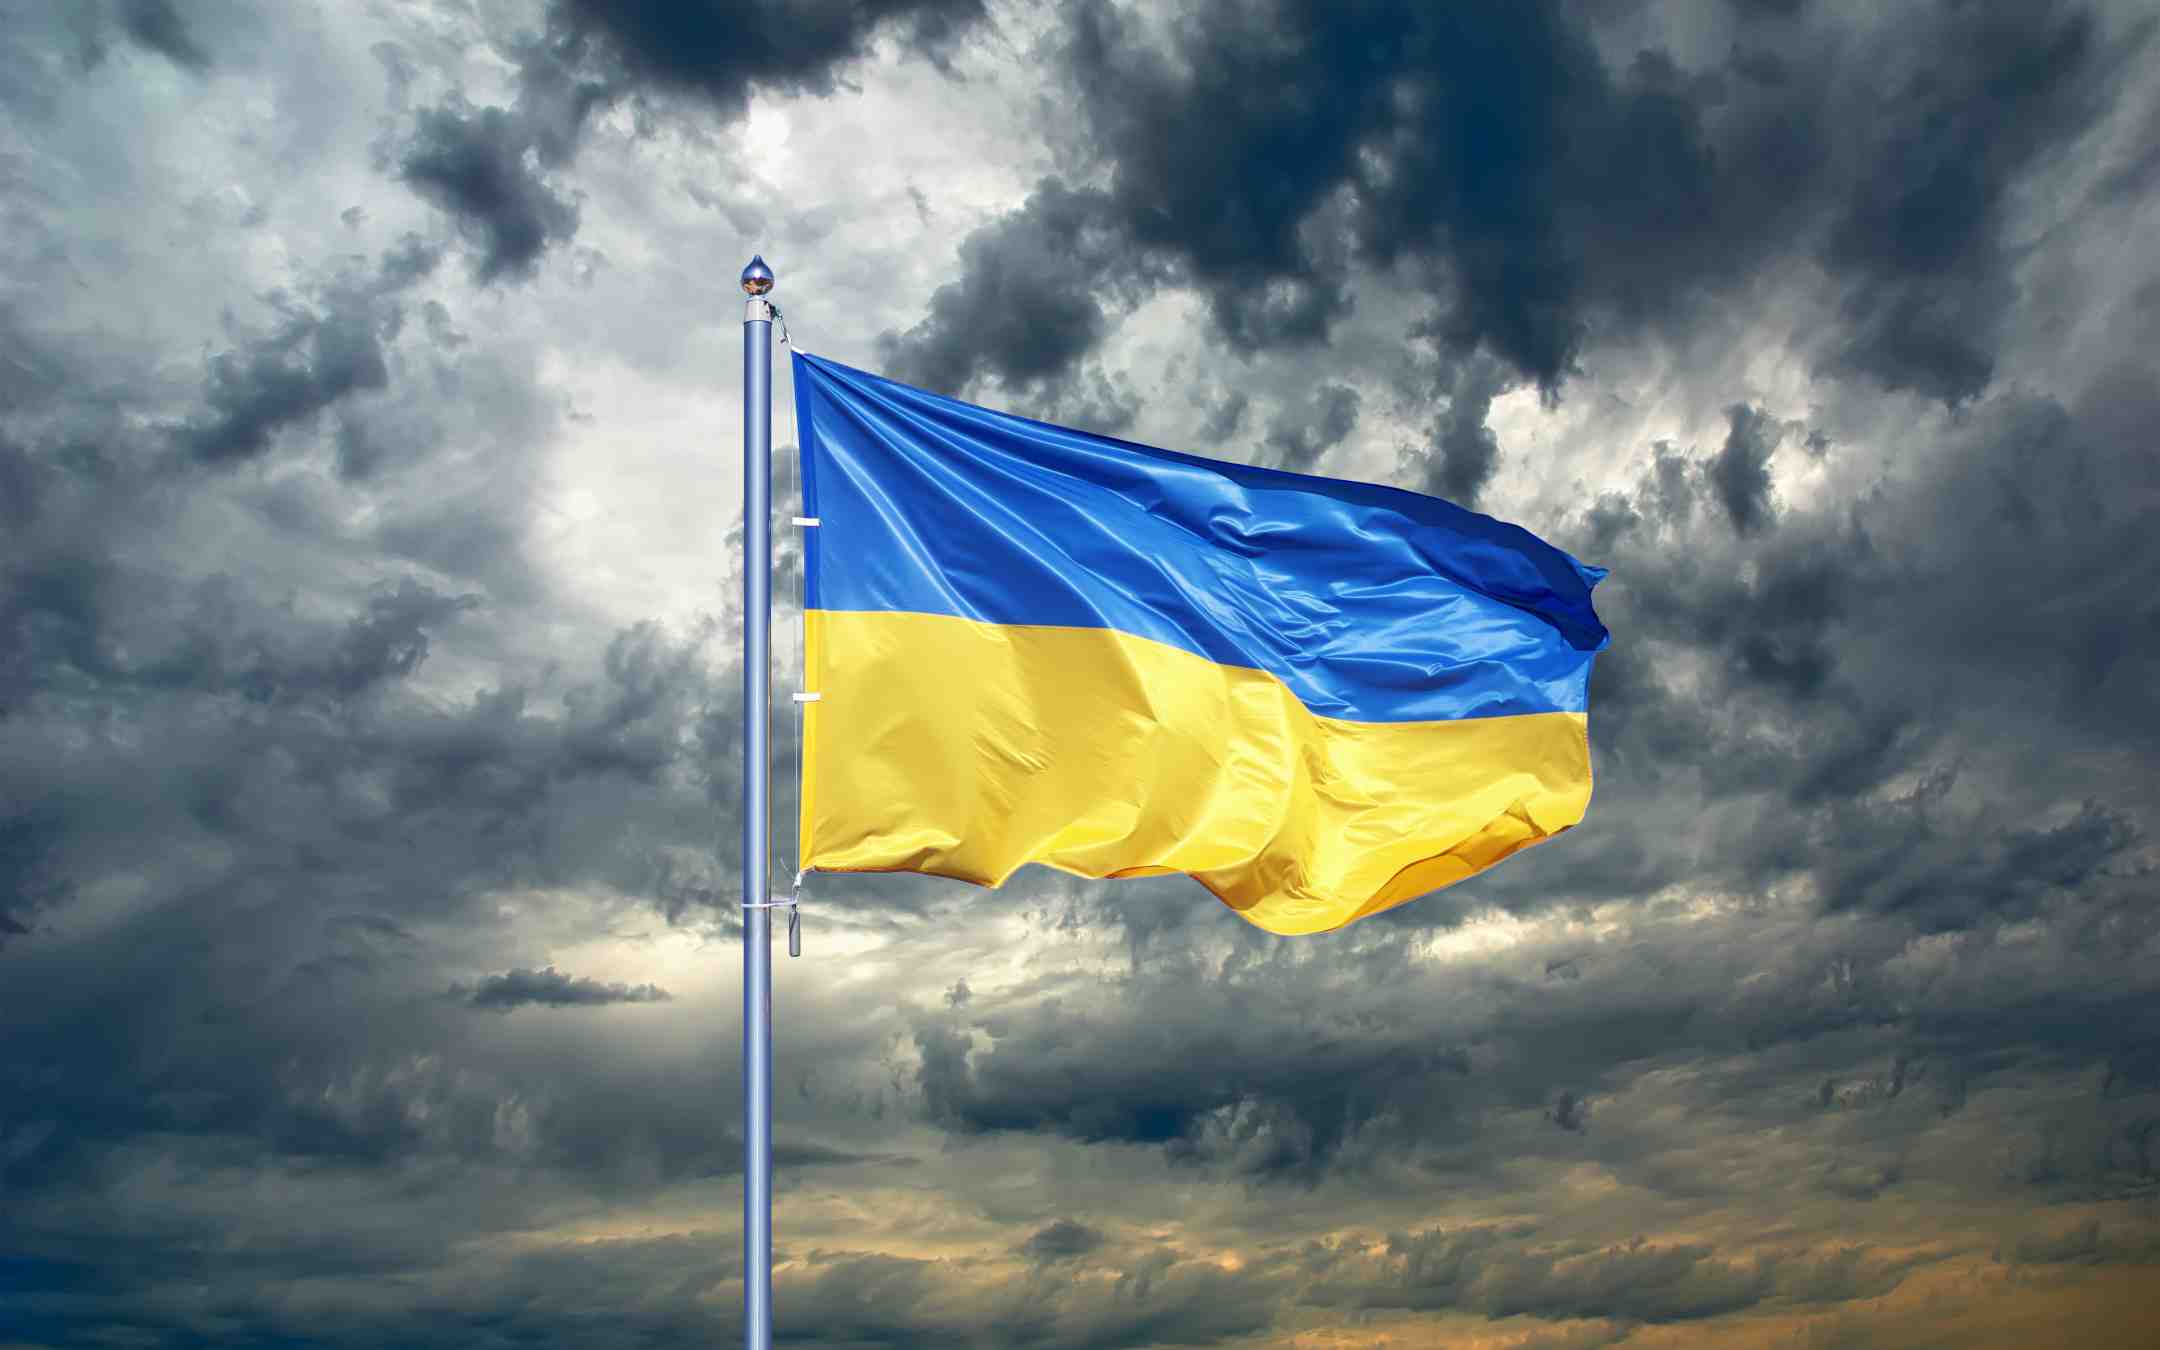 Ukrainan sinikeltainen lippu liehuu tuulessa taustallaan synkkiä myrskypilviä